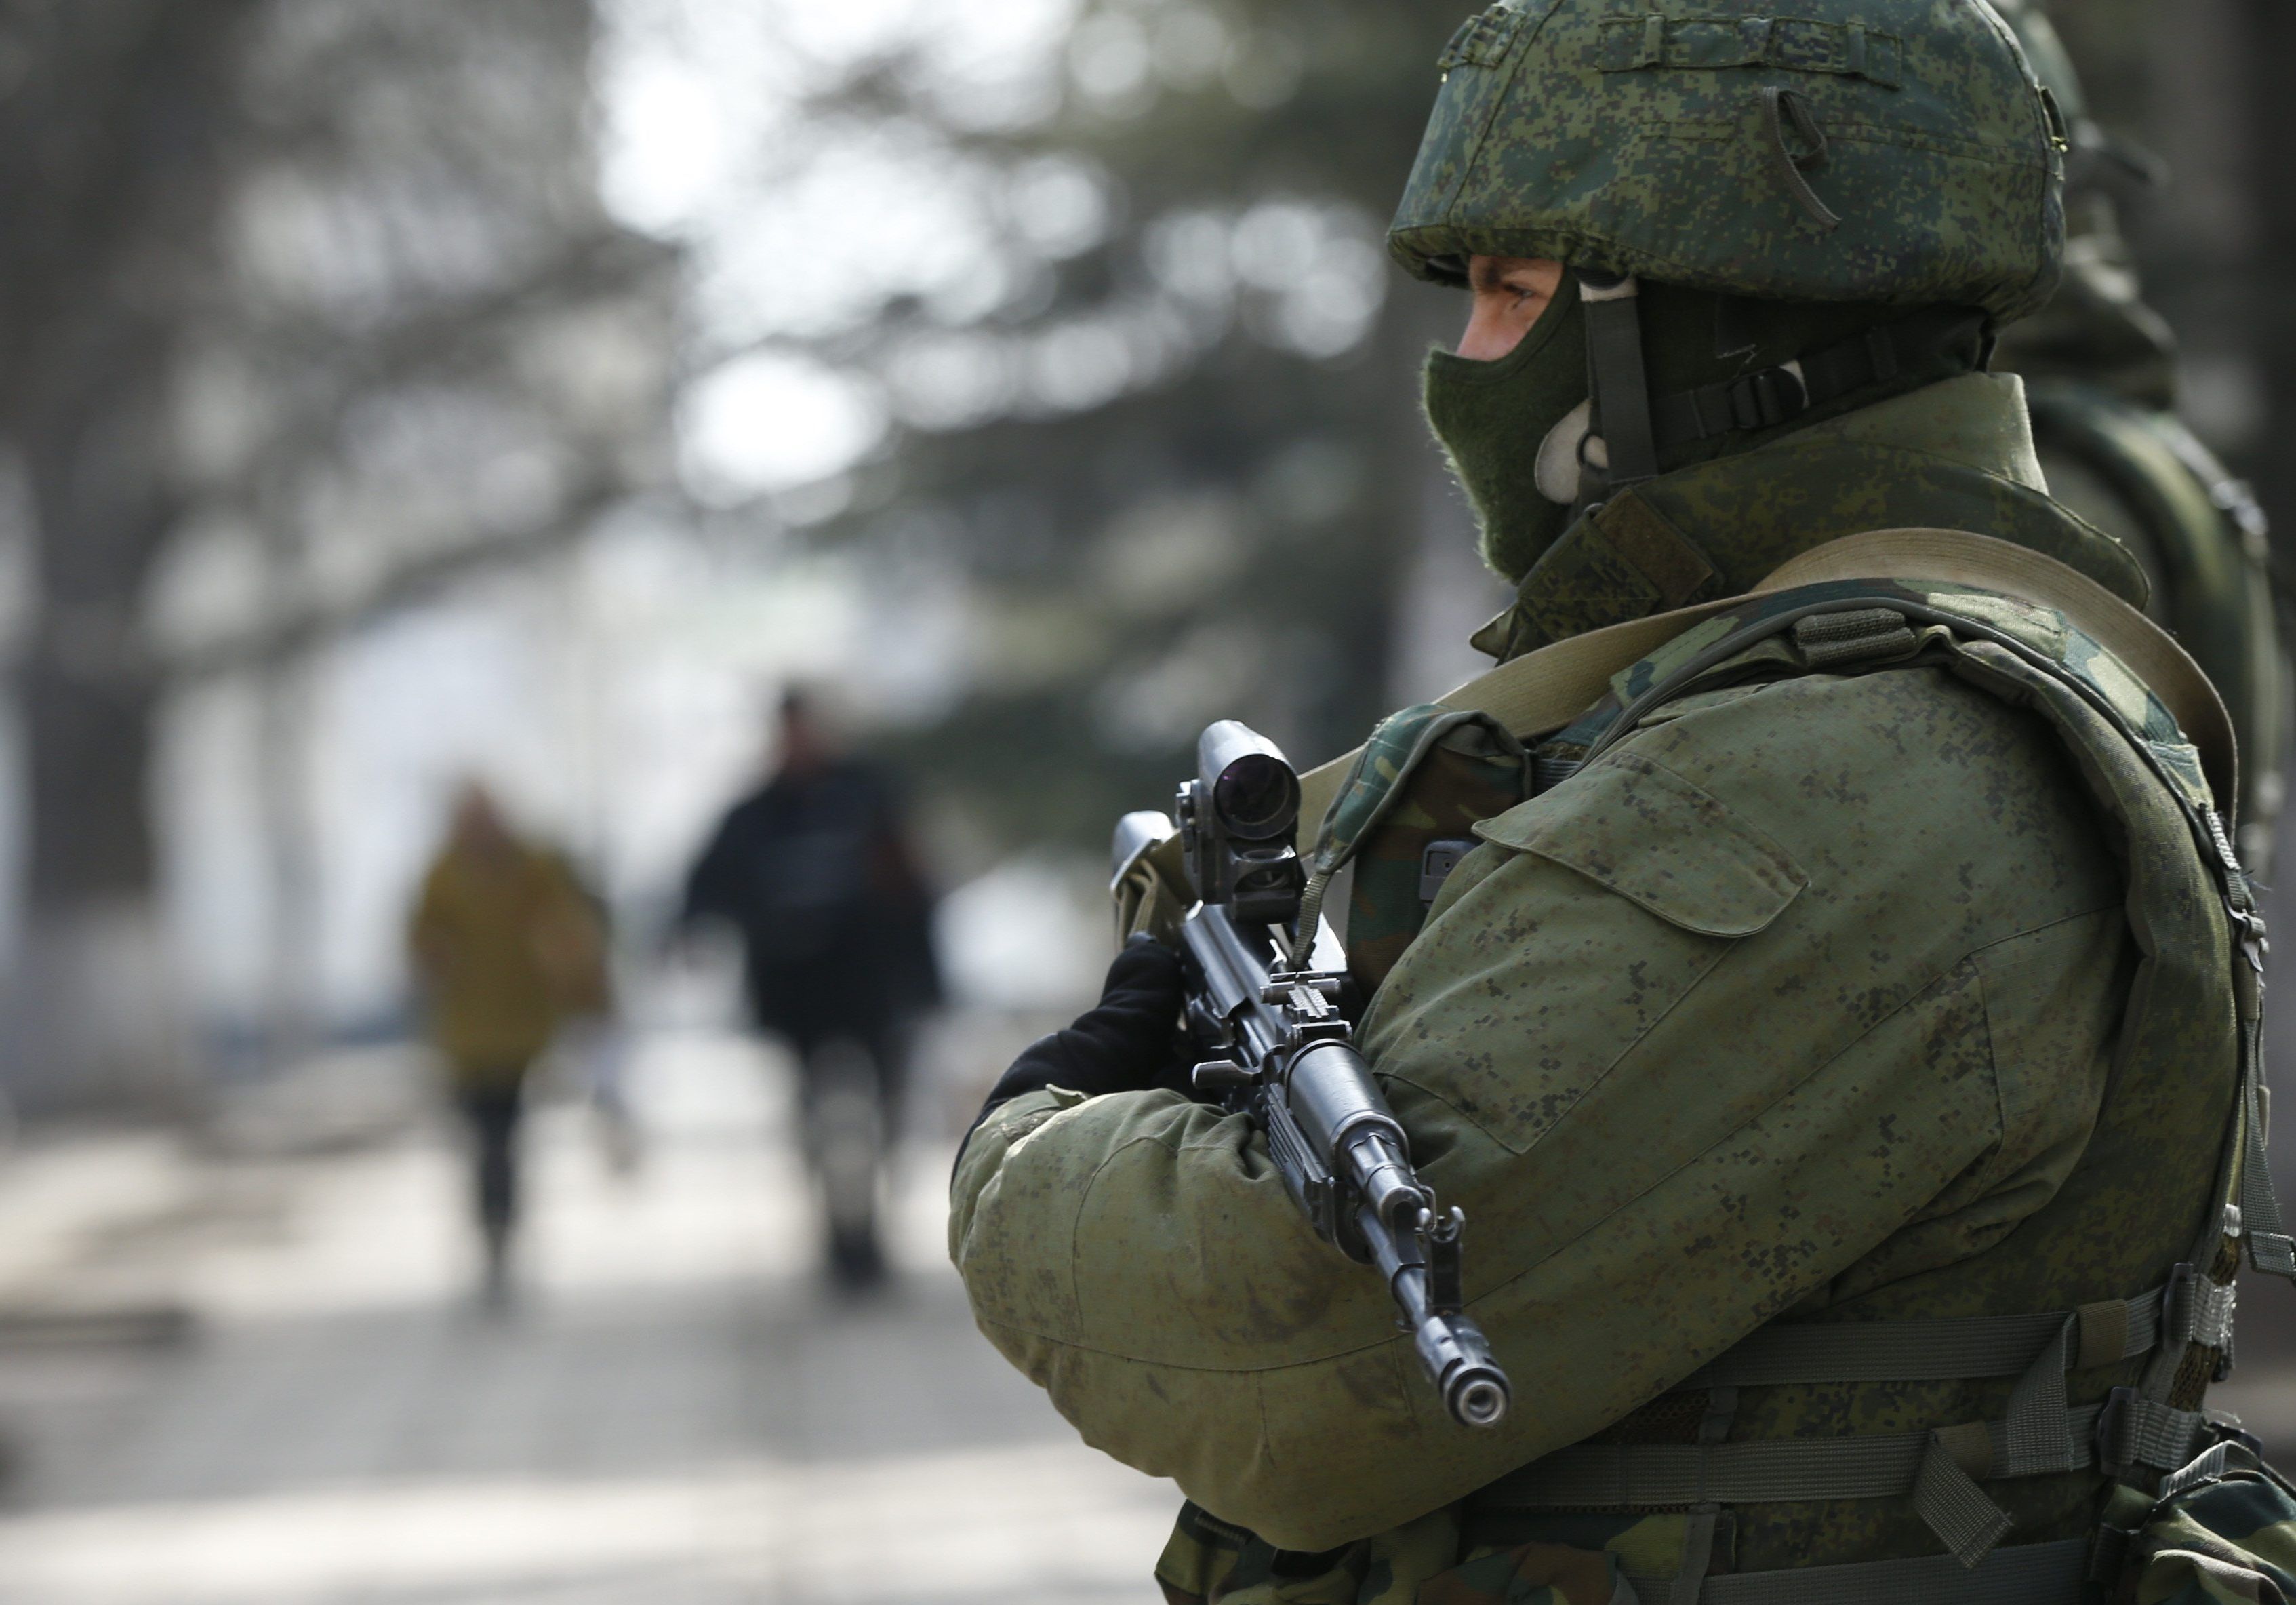 ВЦИОМ: 68% россиян уверены во внешней военной угрозе